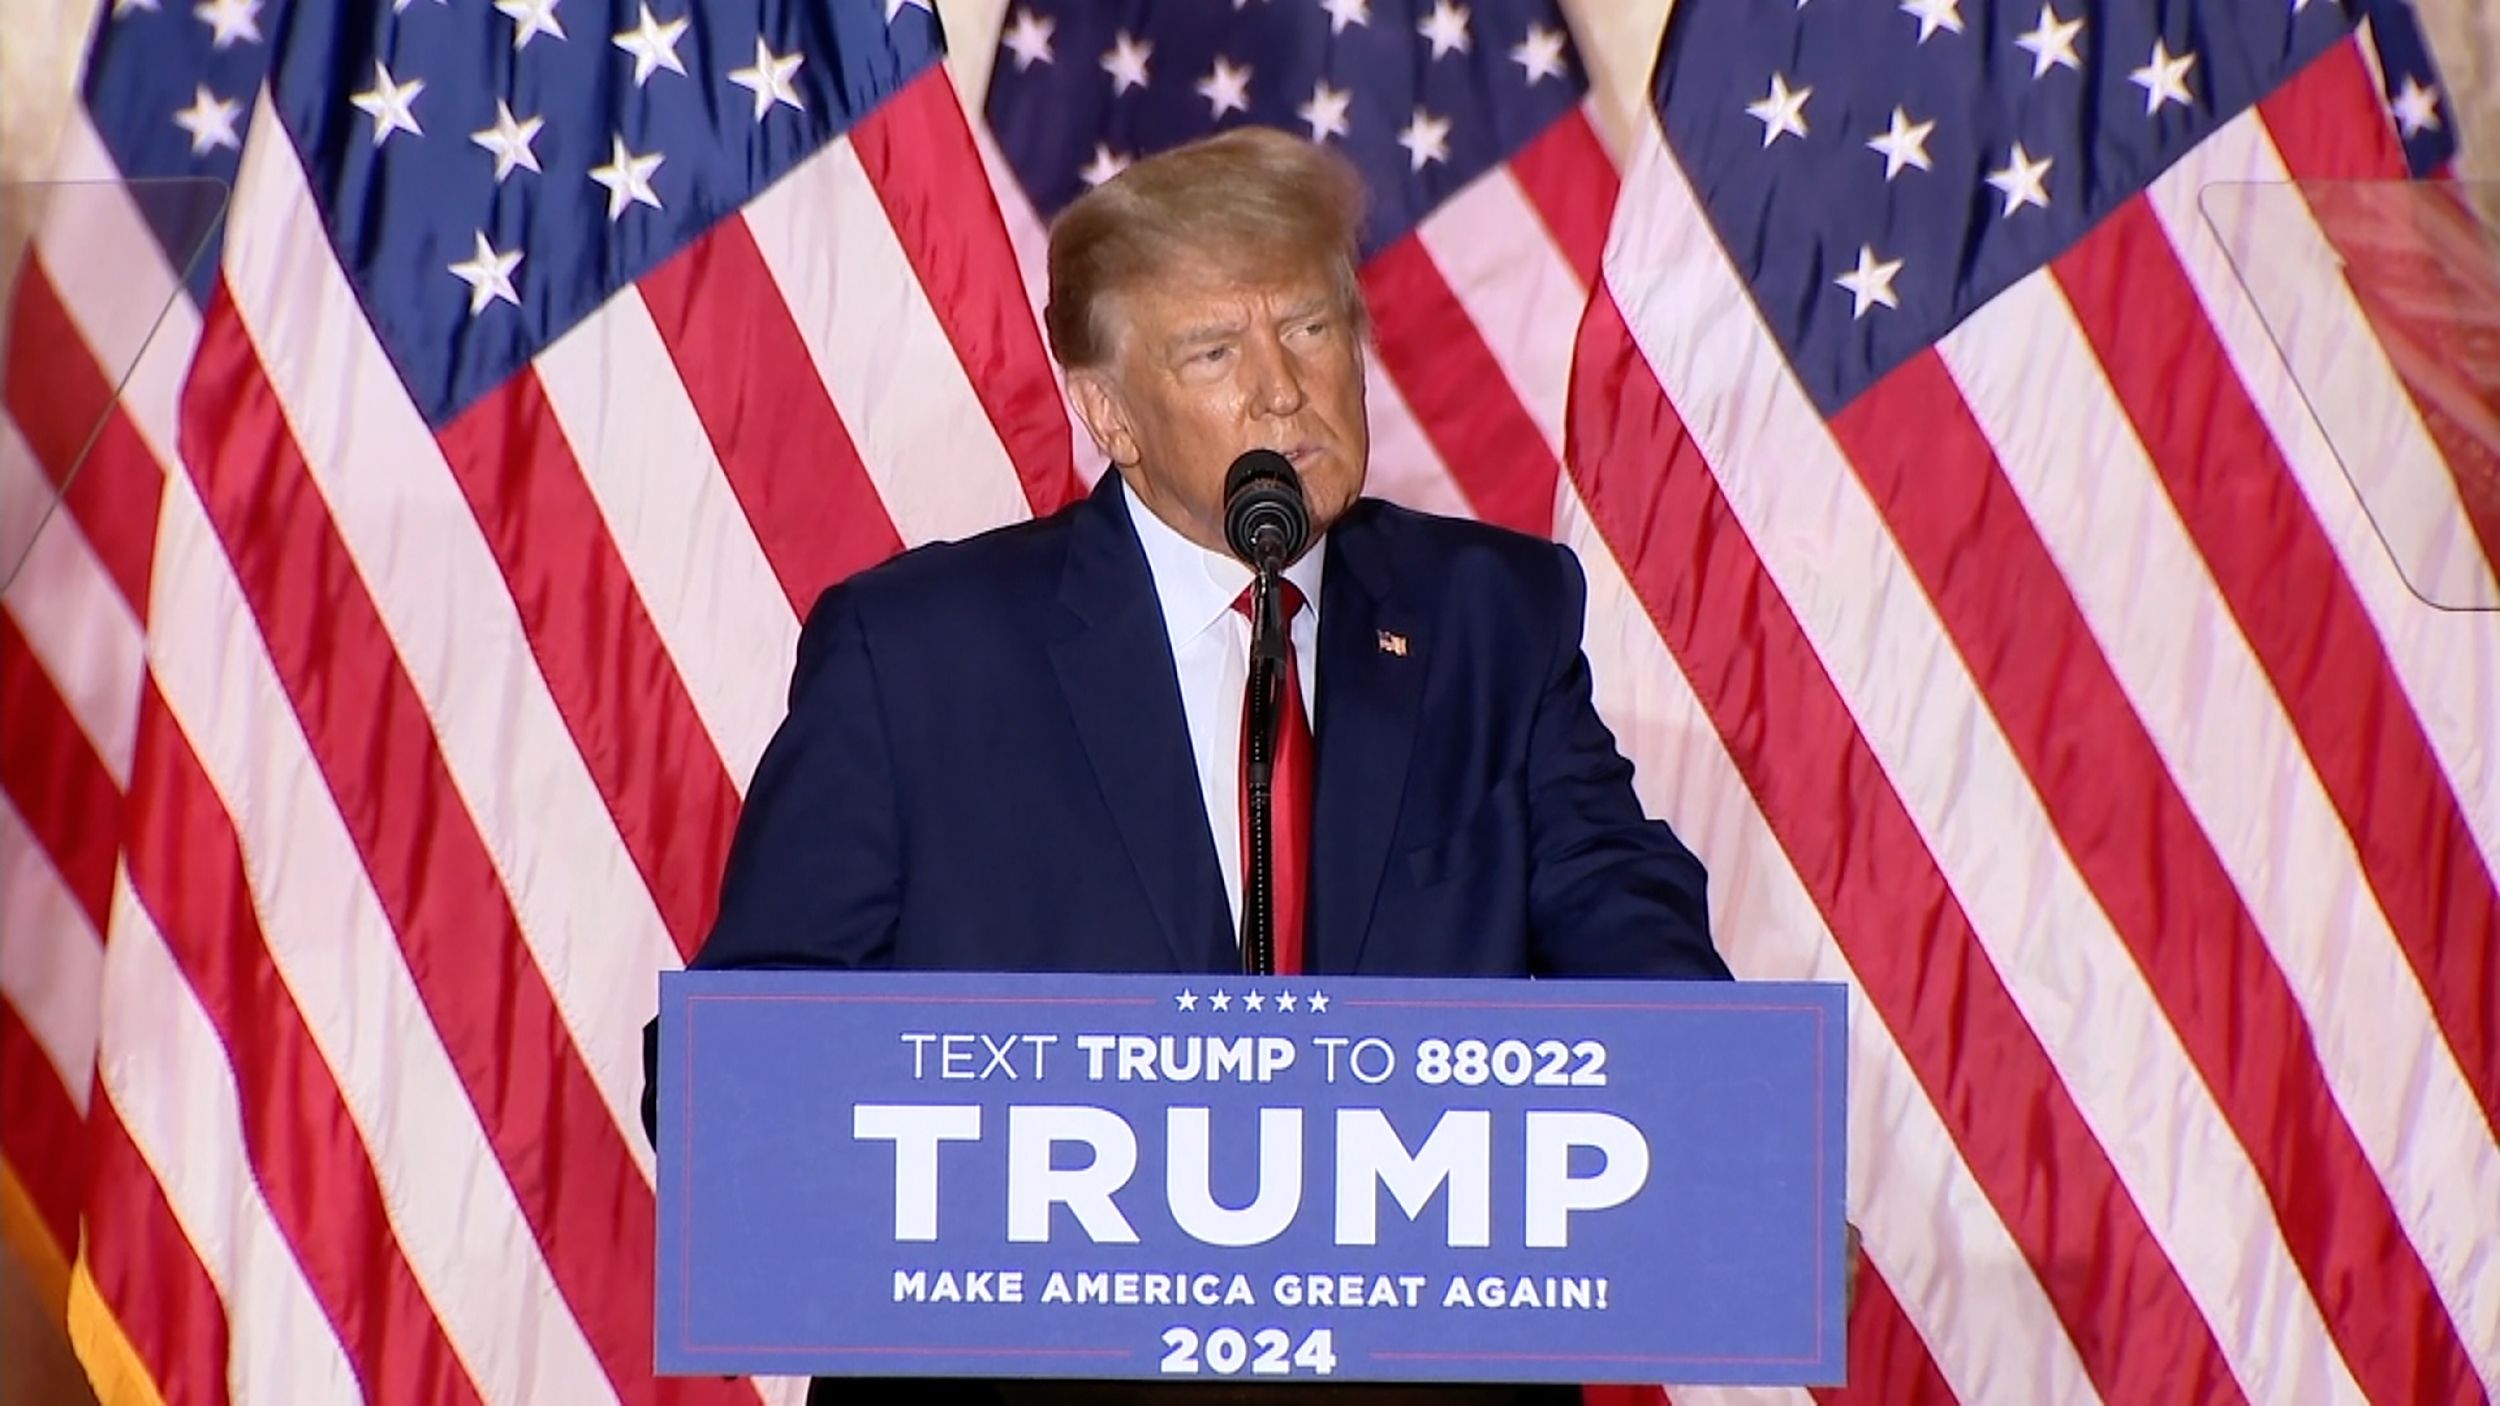 Donald Trump announces a White House bid for 2024 | CNN Politics